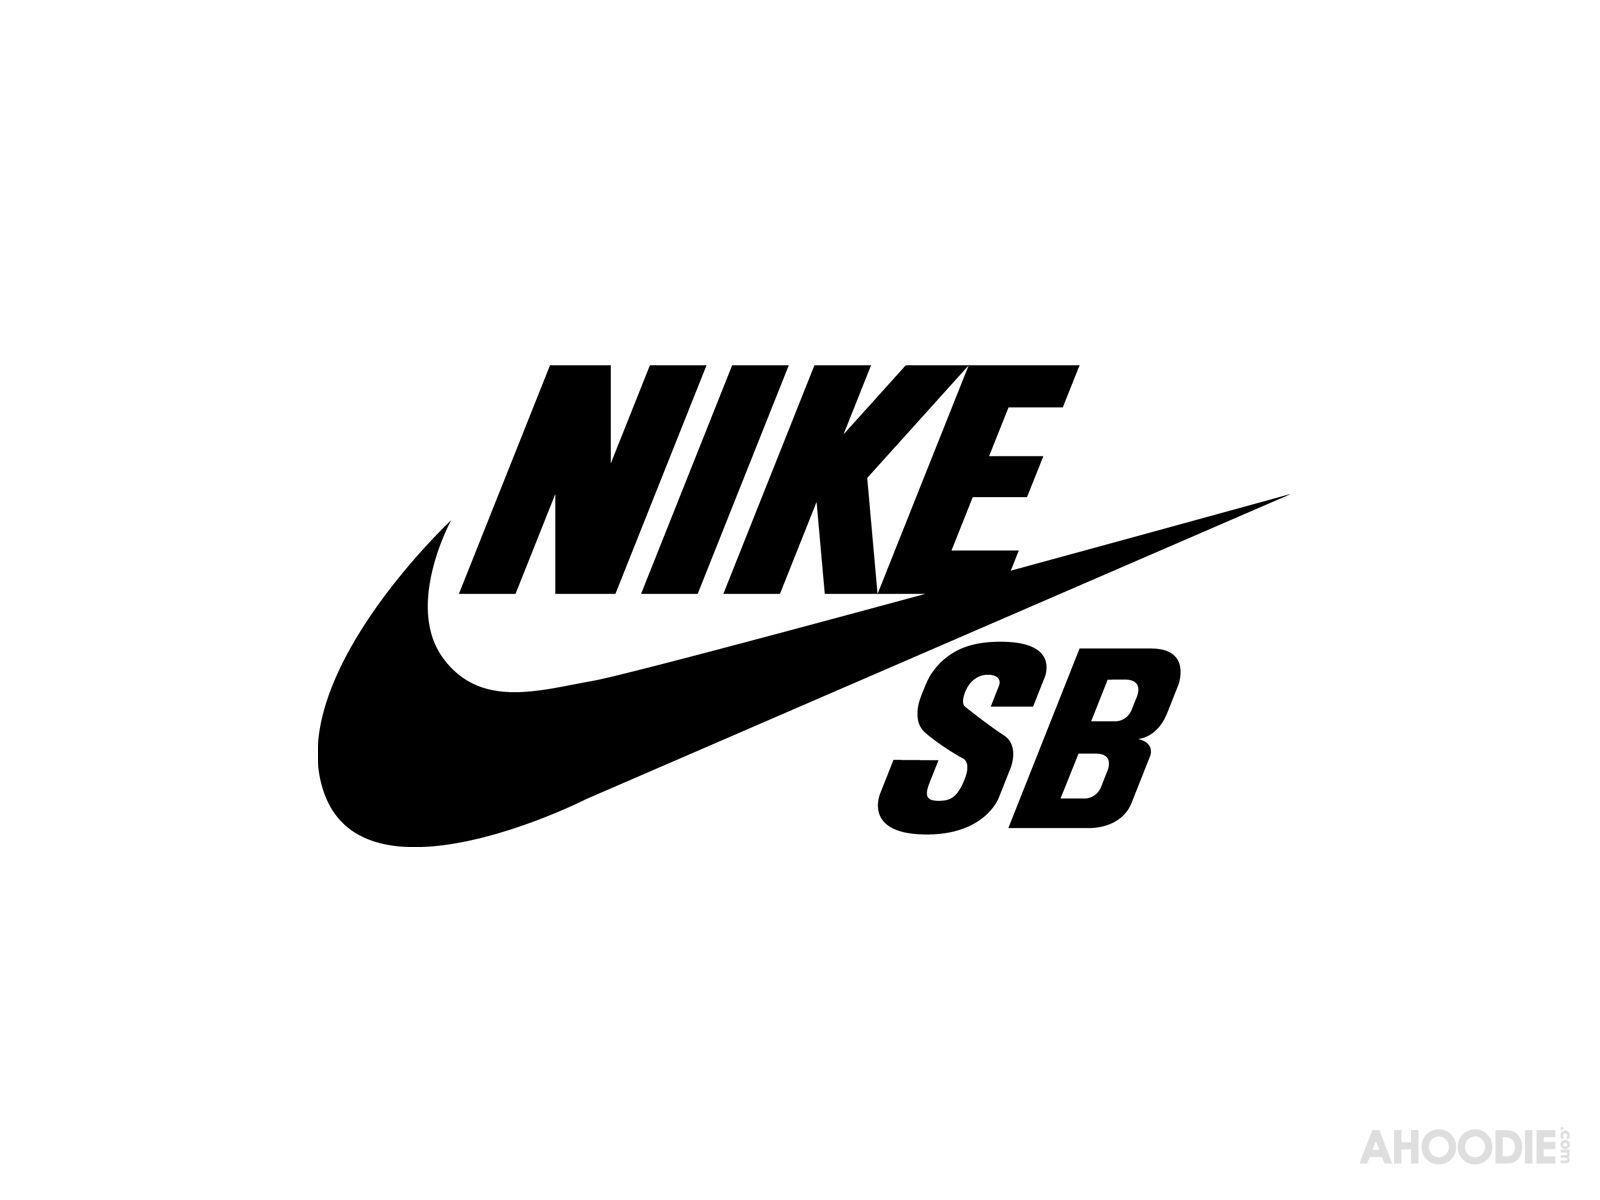 Nike Shoes Sb Logo Wallpaper Desktop, HQ Background. HD